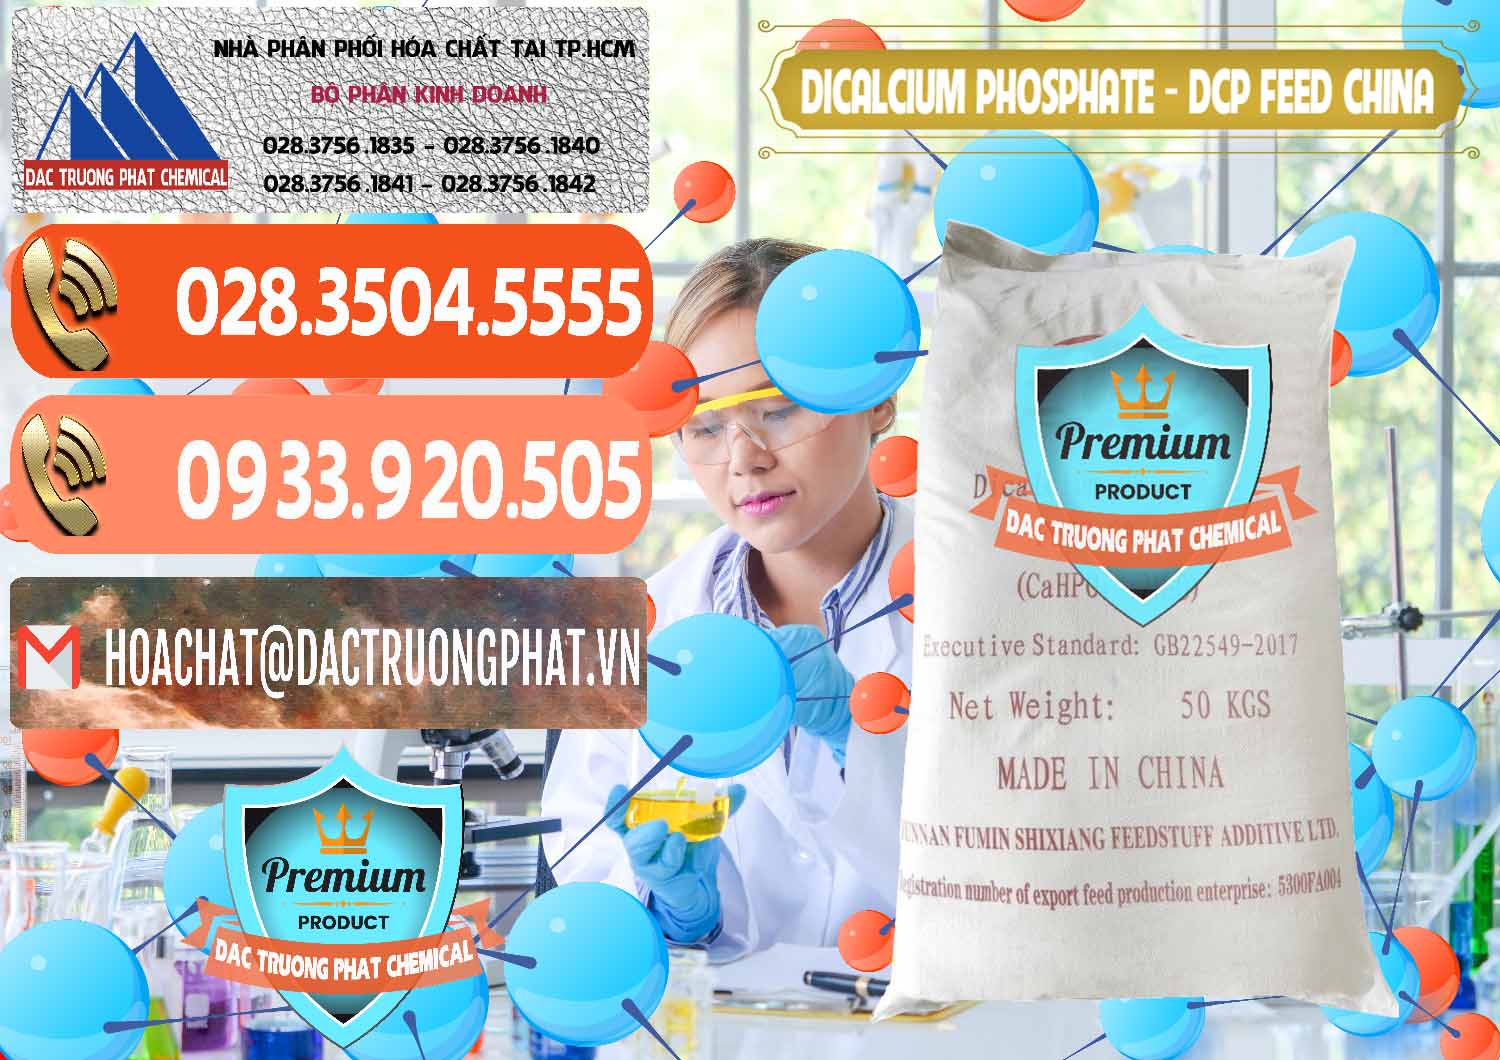 Nơi chuyên kinh doanh và bán Dicalcium Phosphate - DCP Feed Grade Trung Quốc China - 0296 - Chuyên phân phối & nhập khẩu hóa chất tại TP.HCM - hoachatmientay.com